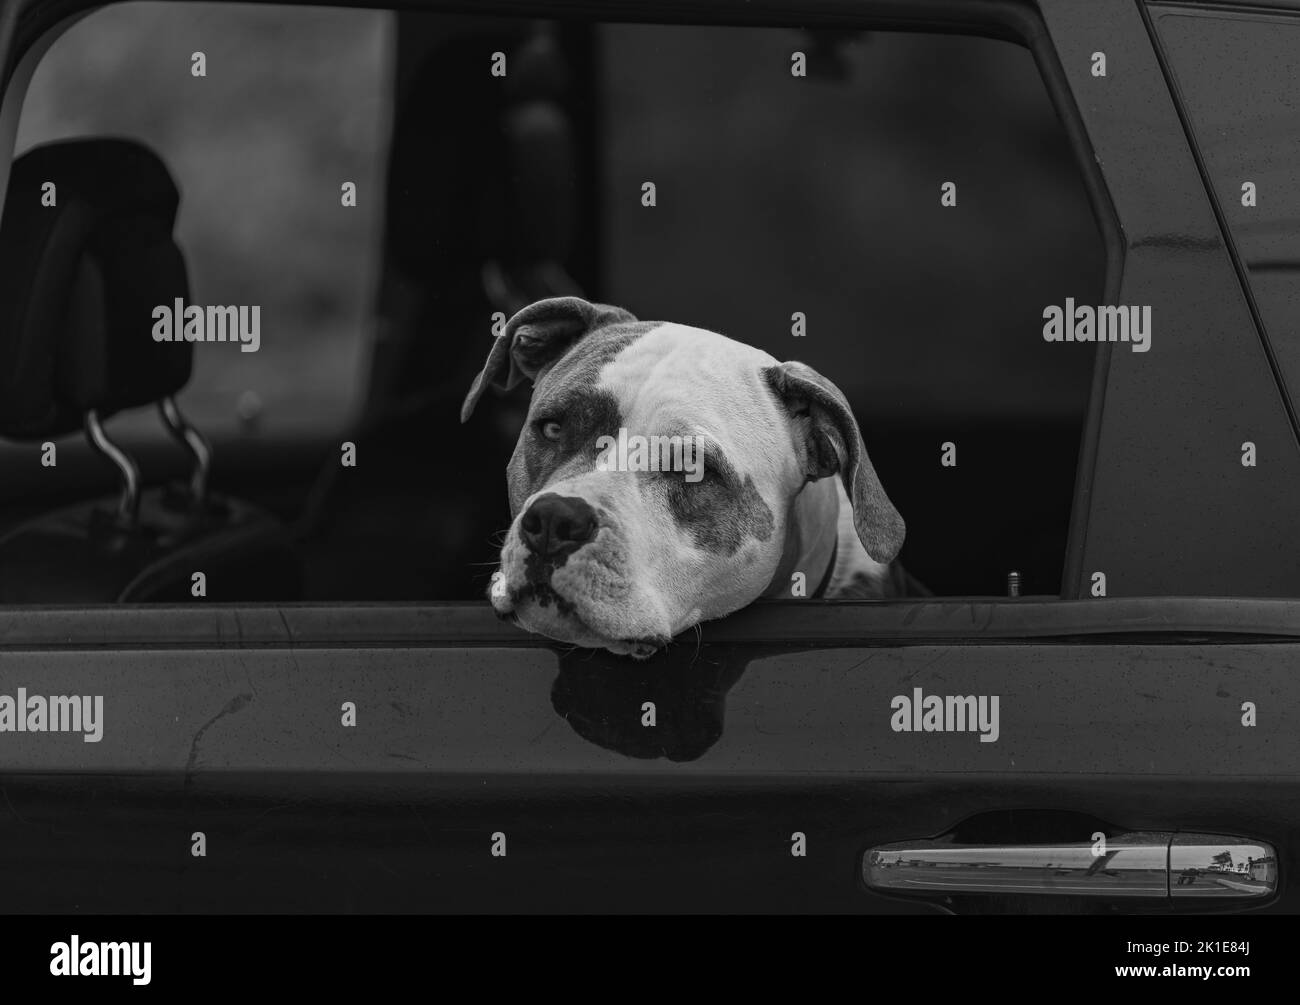 Cane American Pit Bull Terrier seduto in auto con finestra aperta. Chiudi uno di un cane in macchina. Nessuno, foto di strada, messa a fuoco selettiva Foto Stock